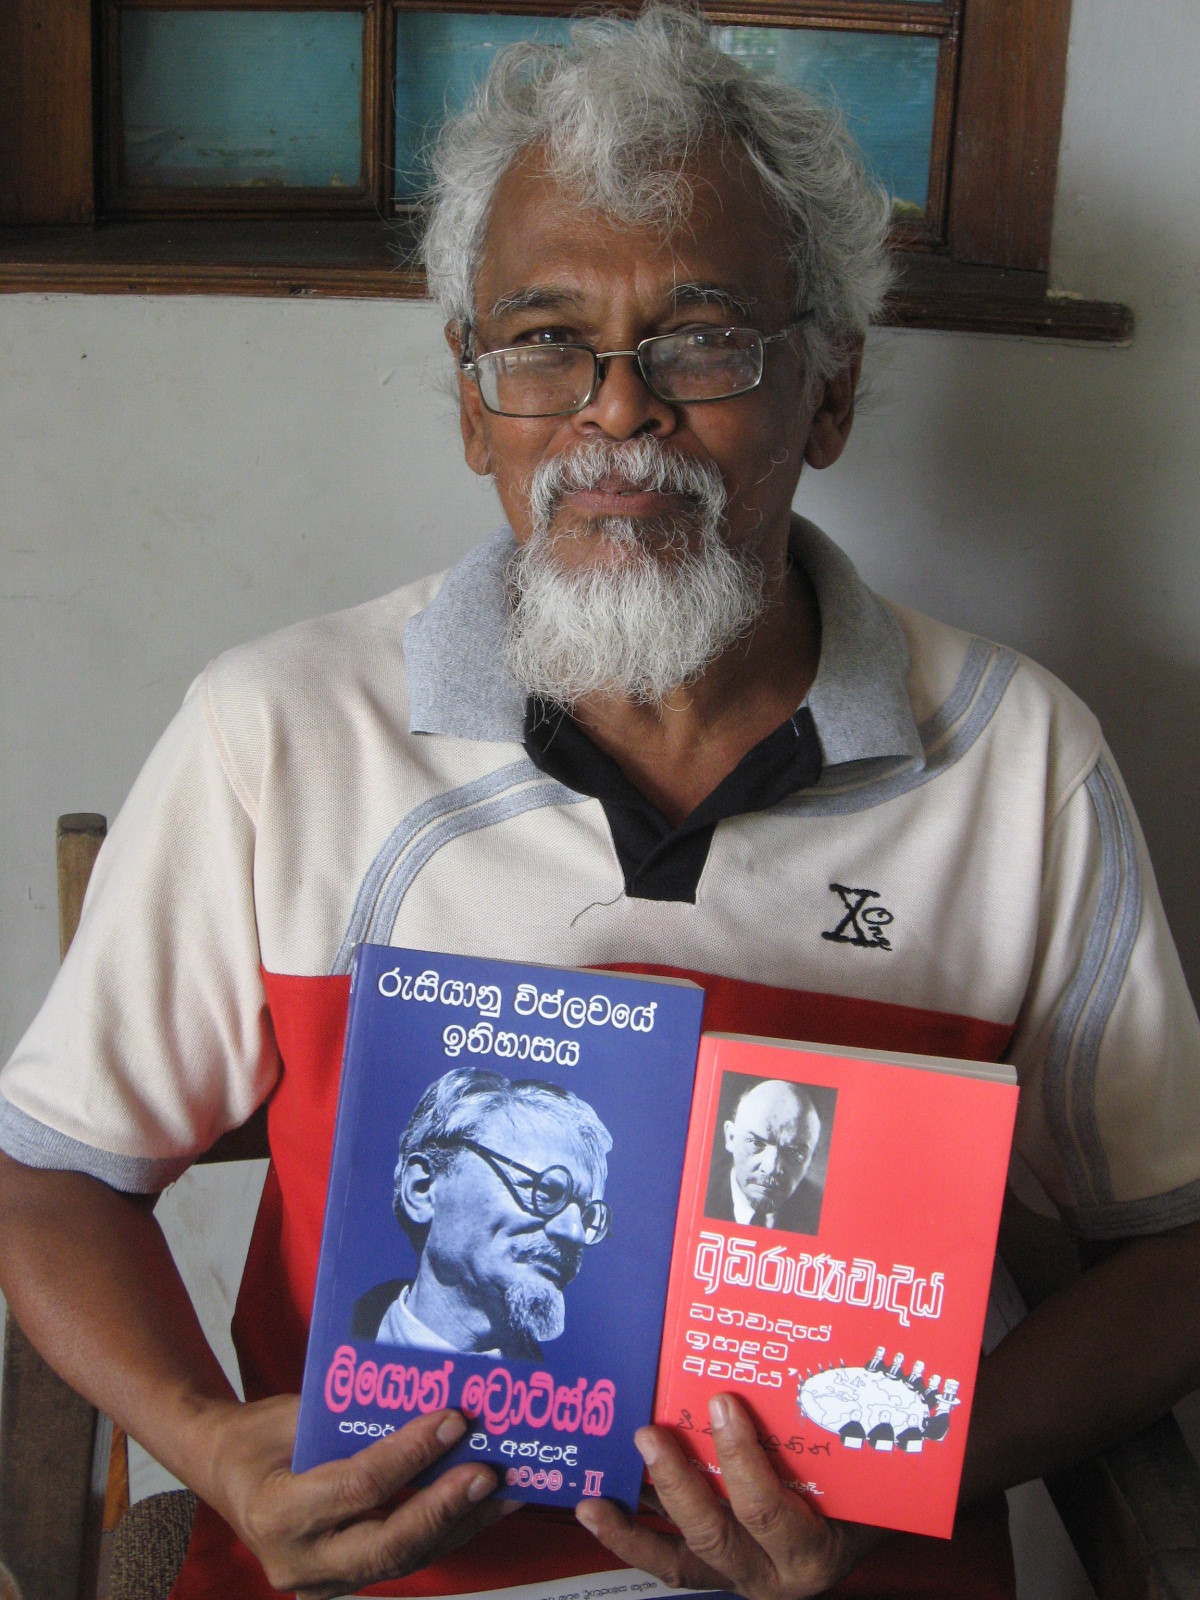 Trotskyist — Communist (Colombo, Shri Lanka)<br/> <br/>
«Инкарнация Троцкого»<br/> <br/>
Этого дедушку сфотографировал в Коломбо (Шри Ланка). Он продавал коммунистическую литературу на сингальском языке. Если кто из режиссеров задумает снять фильм о жизни Льва Троцкого — вот вам отличный кандидат на главную роль!!! )))